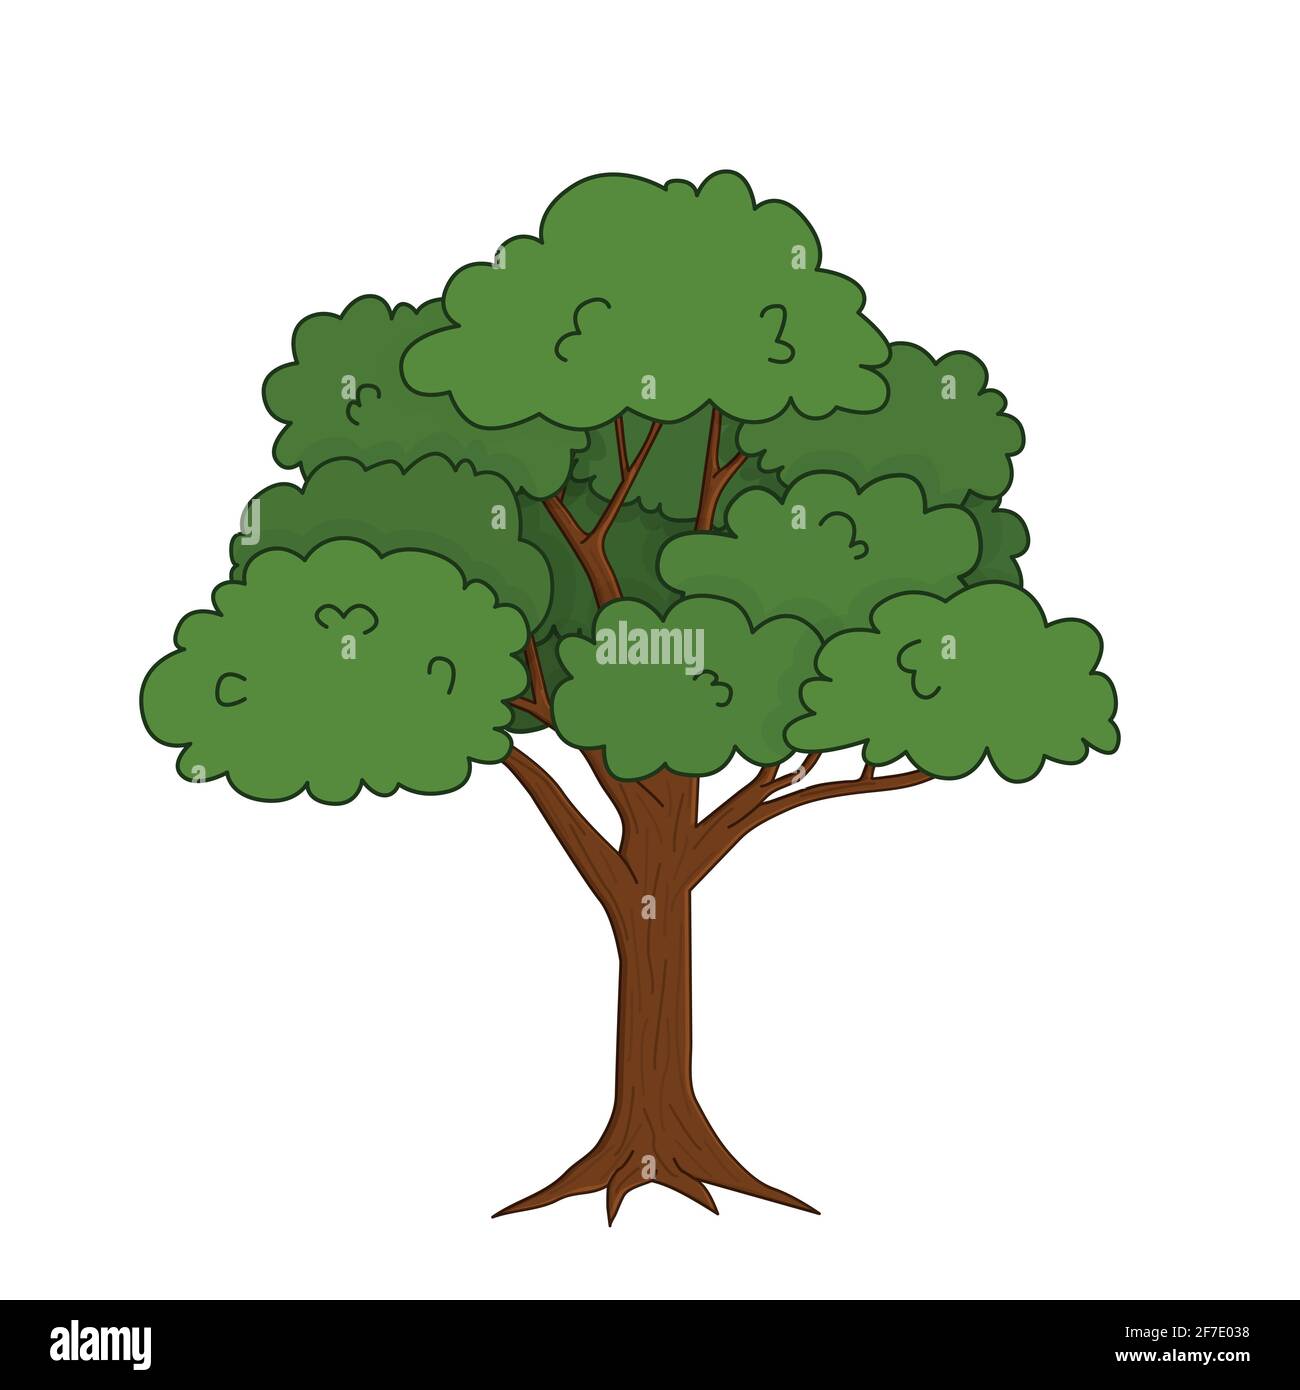 Vektor skizzieren Doodle Cartoon einzelne helle grüne Eiche Baum. Isolierte, handgezeichnete Illustration auf weißem Hintergrund für die Waldszene. Stock Vektor